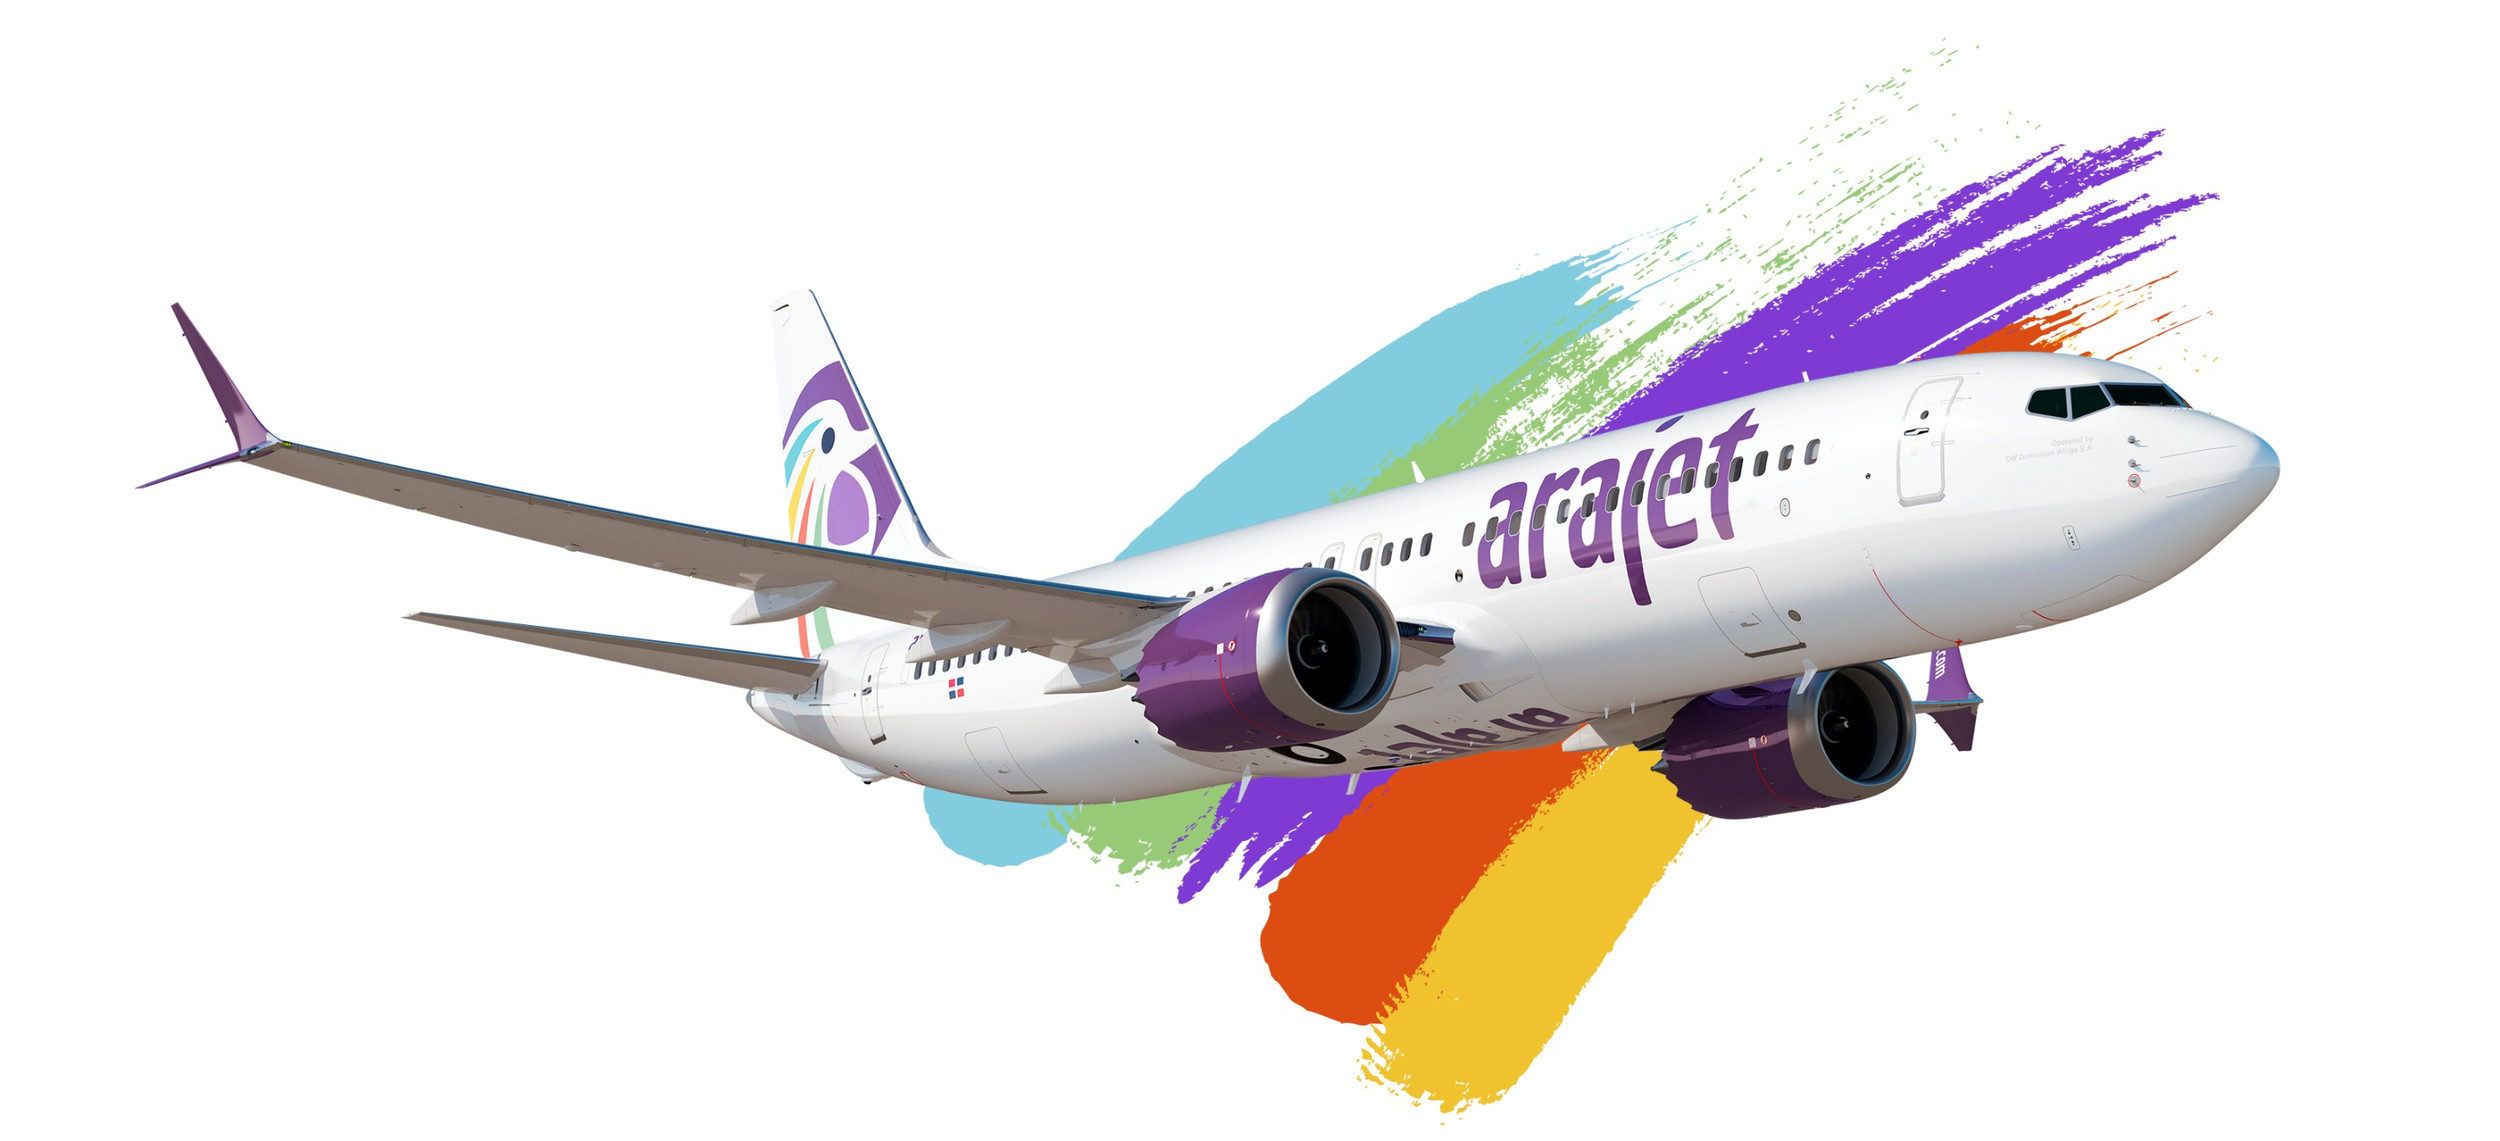 Inicia operaciones Arajet aerolínea low fare, conectando al Aeropuerto de Monterrey con el Caribe